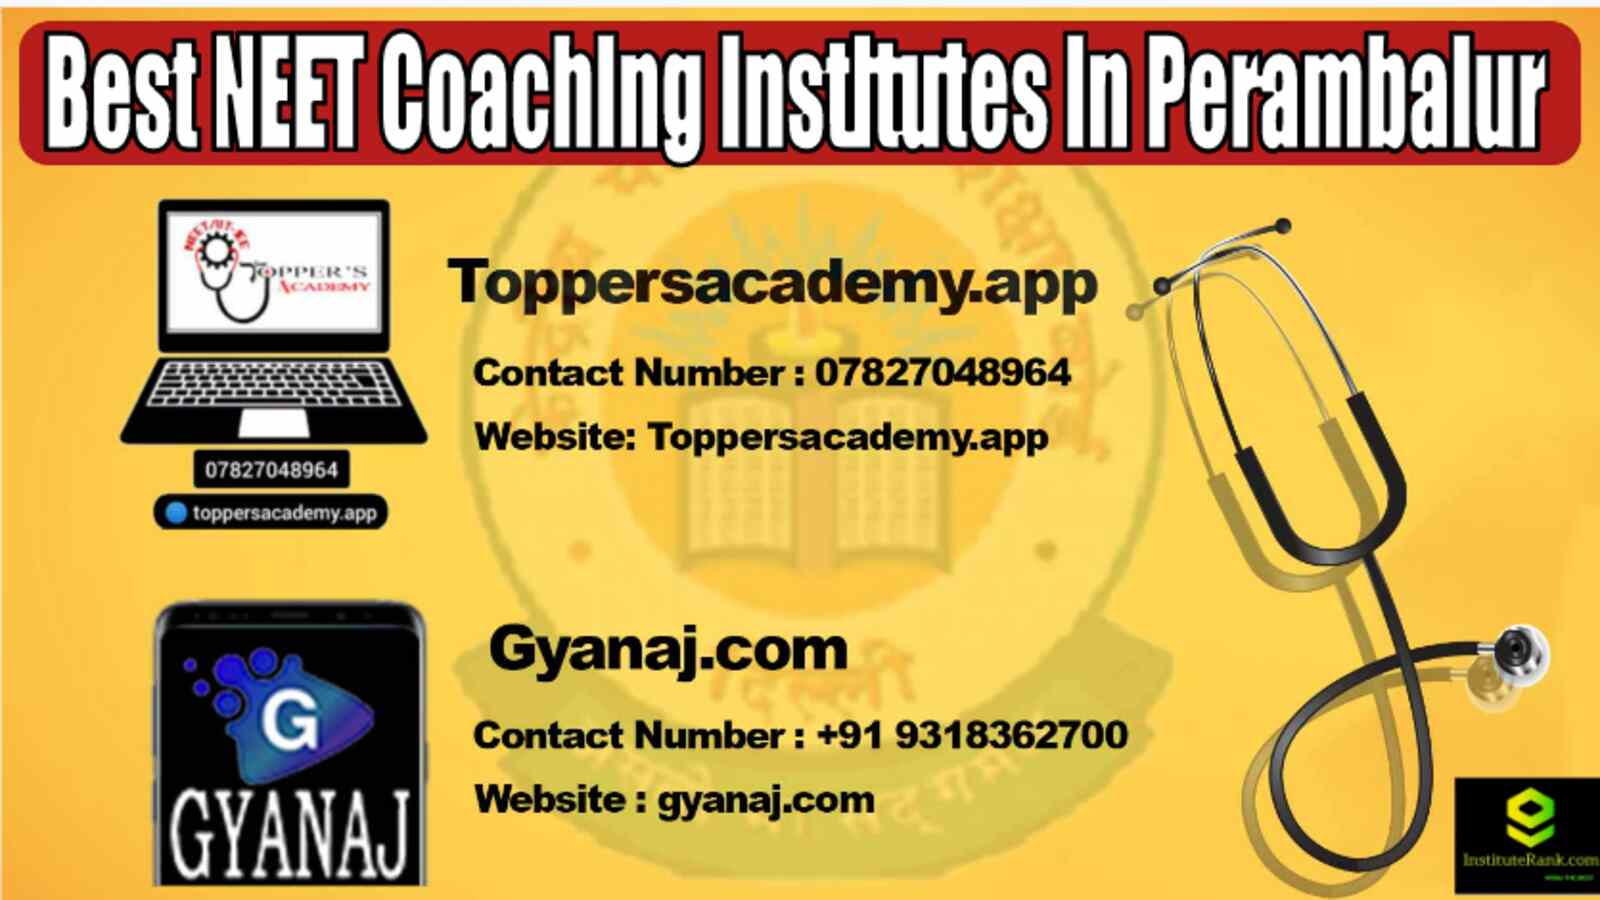 Best NEET Coaching Institutes in Perambalur